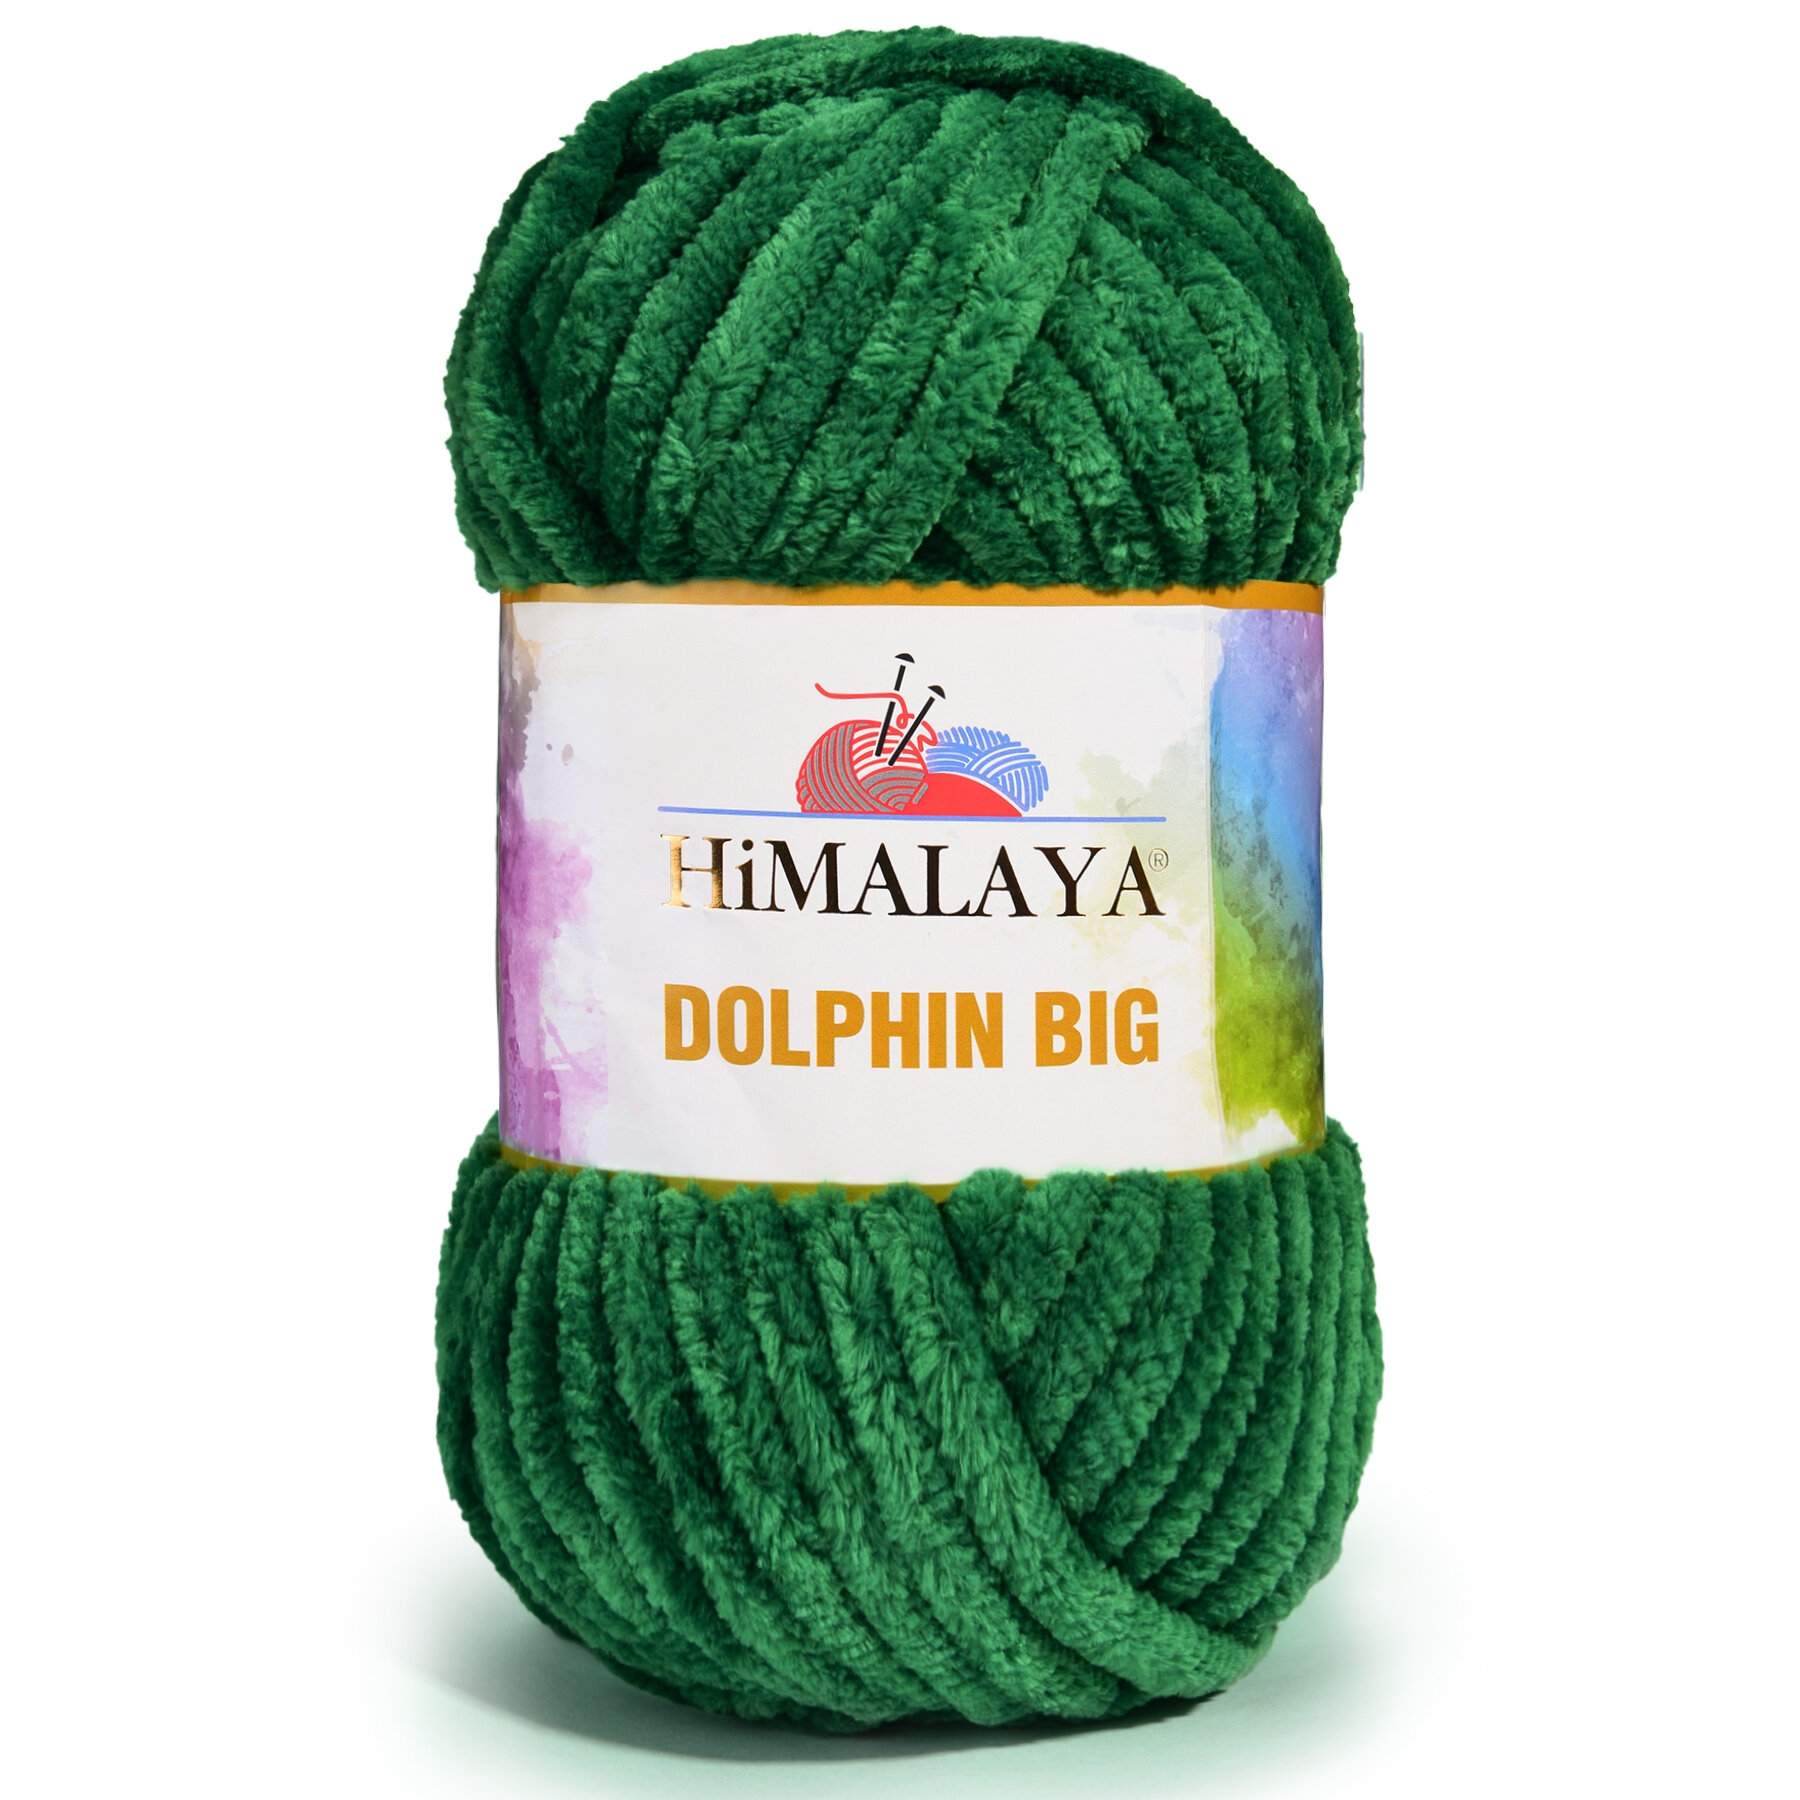 Пряжа Himalaya DOLPHIN BIG 100% Полиэстер, 200гр/80м, (76736 зеленый) 1 упаковка (3 мотка)